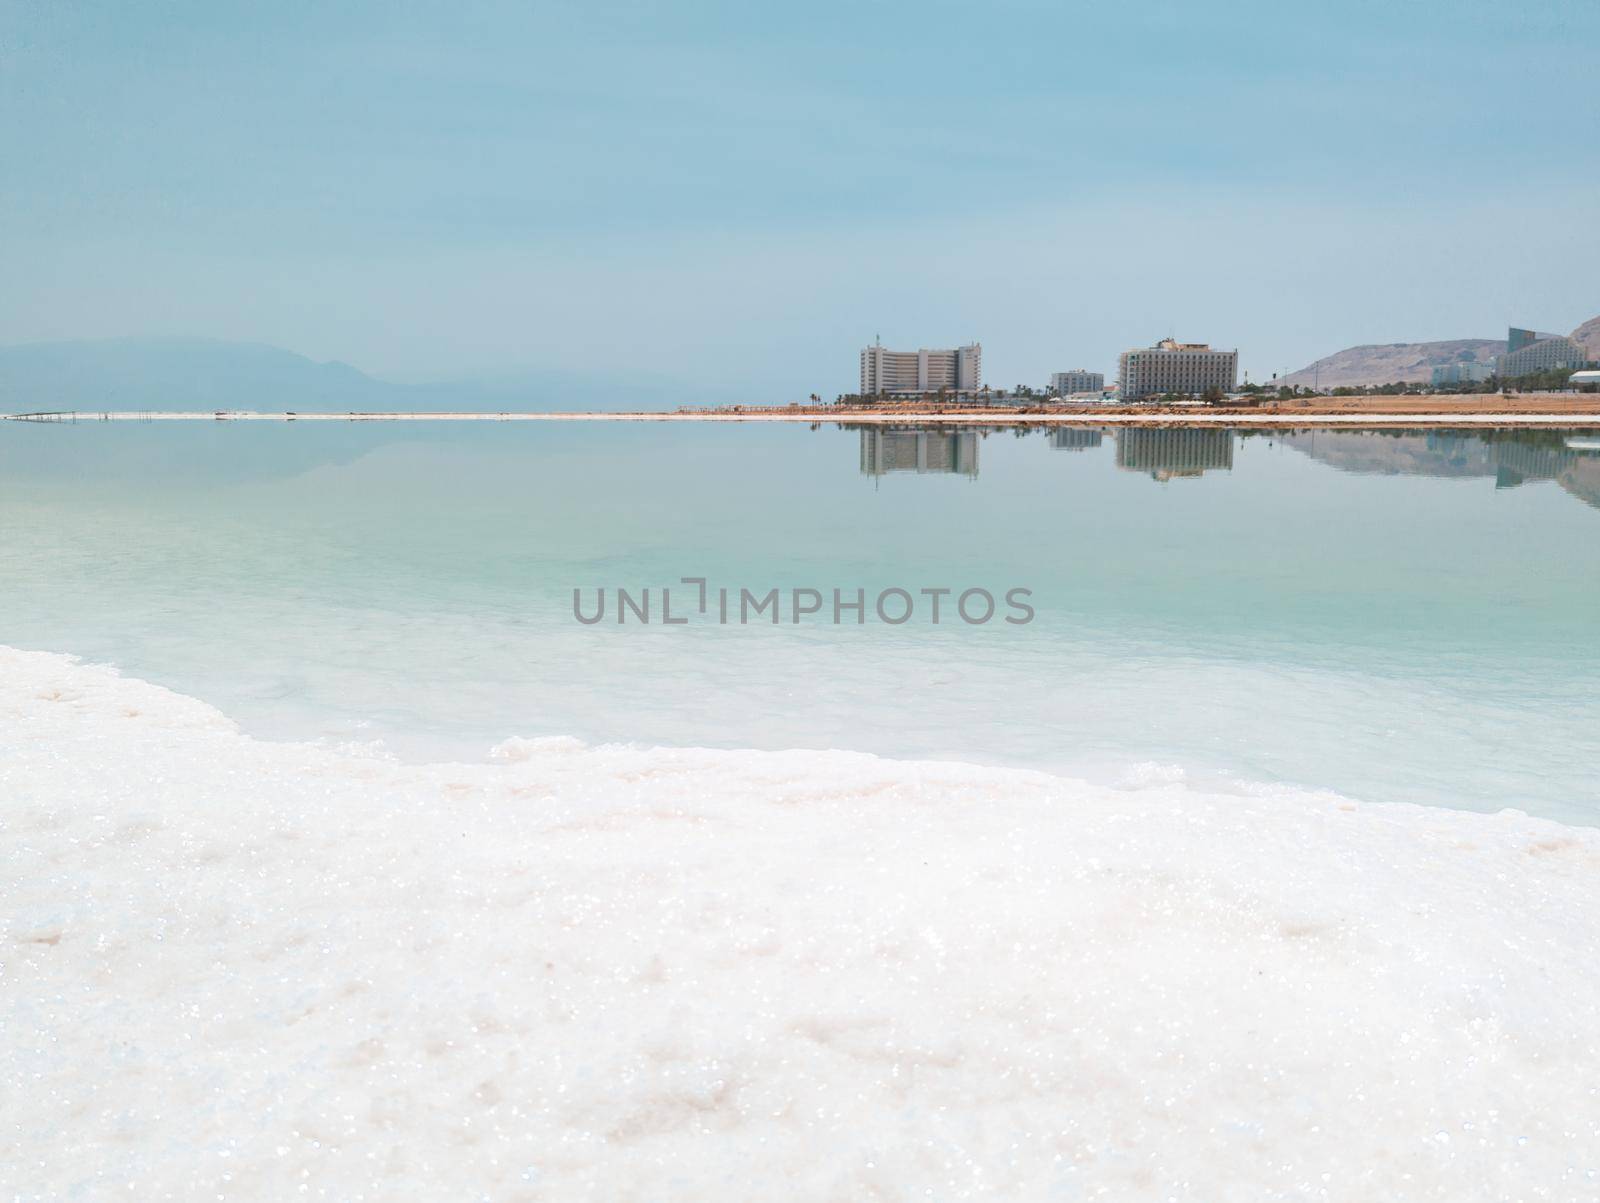 Landscape view on Dead Sea salt crystals formations, clear cyan green water at Ein Bokek beach, Israel by Len44ik